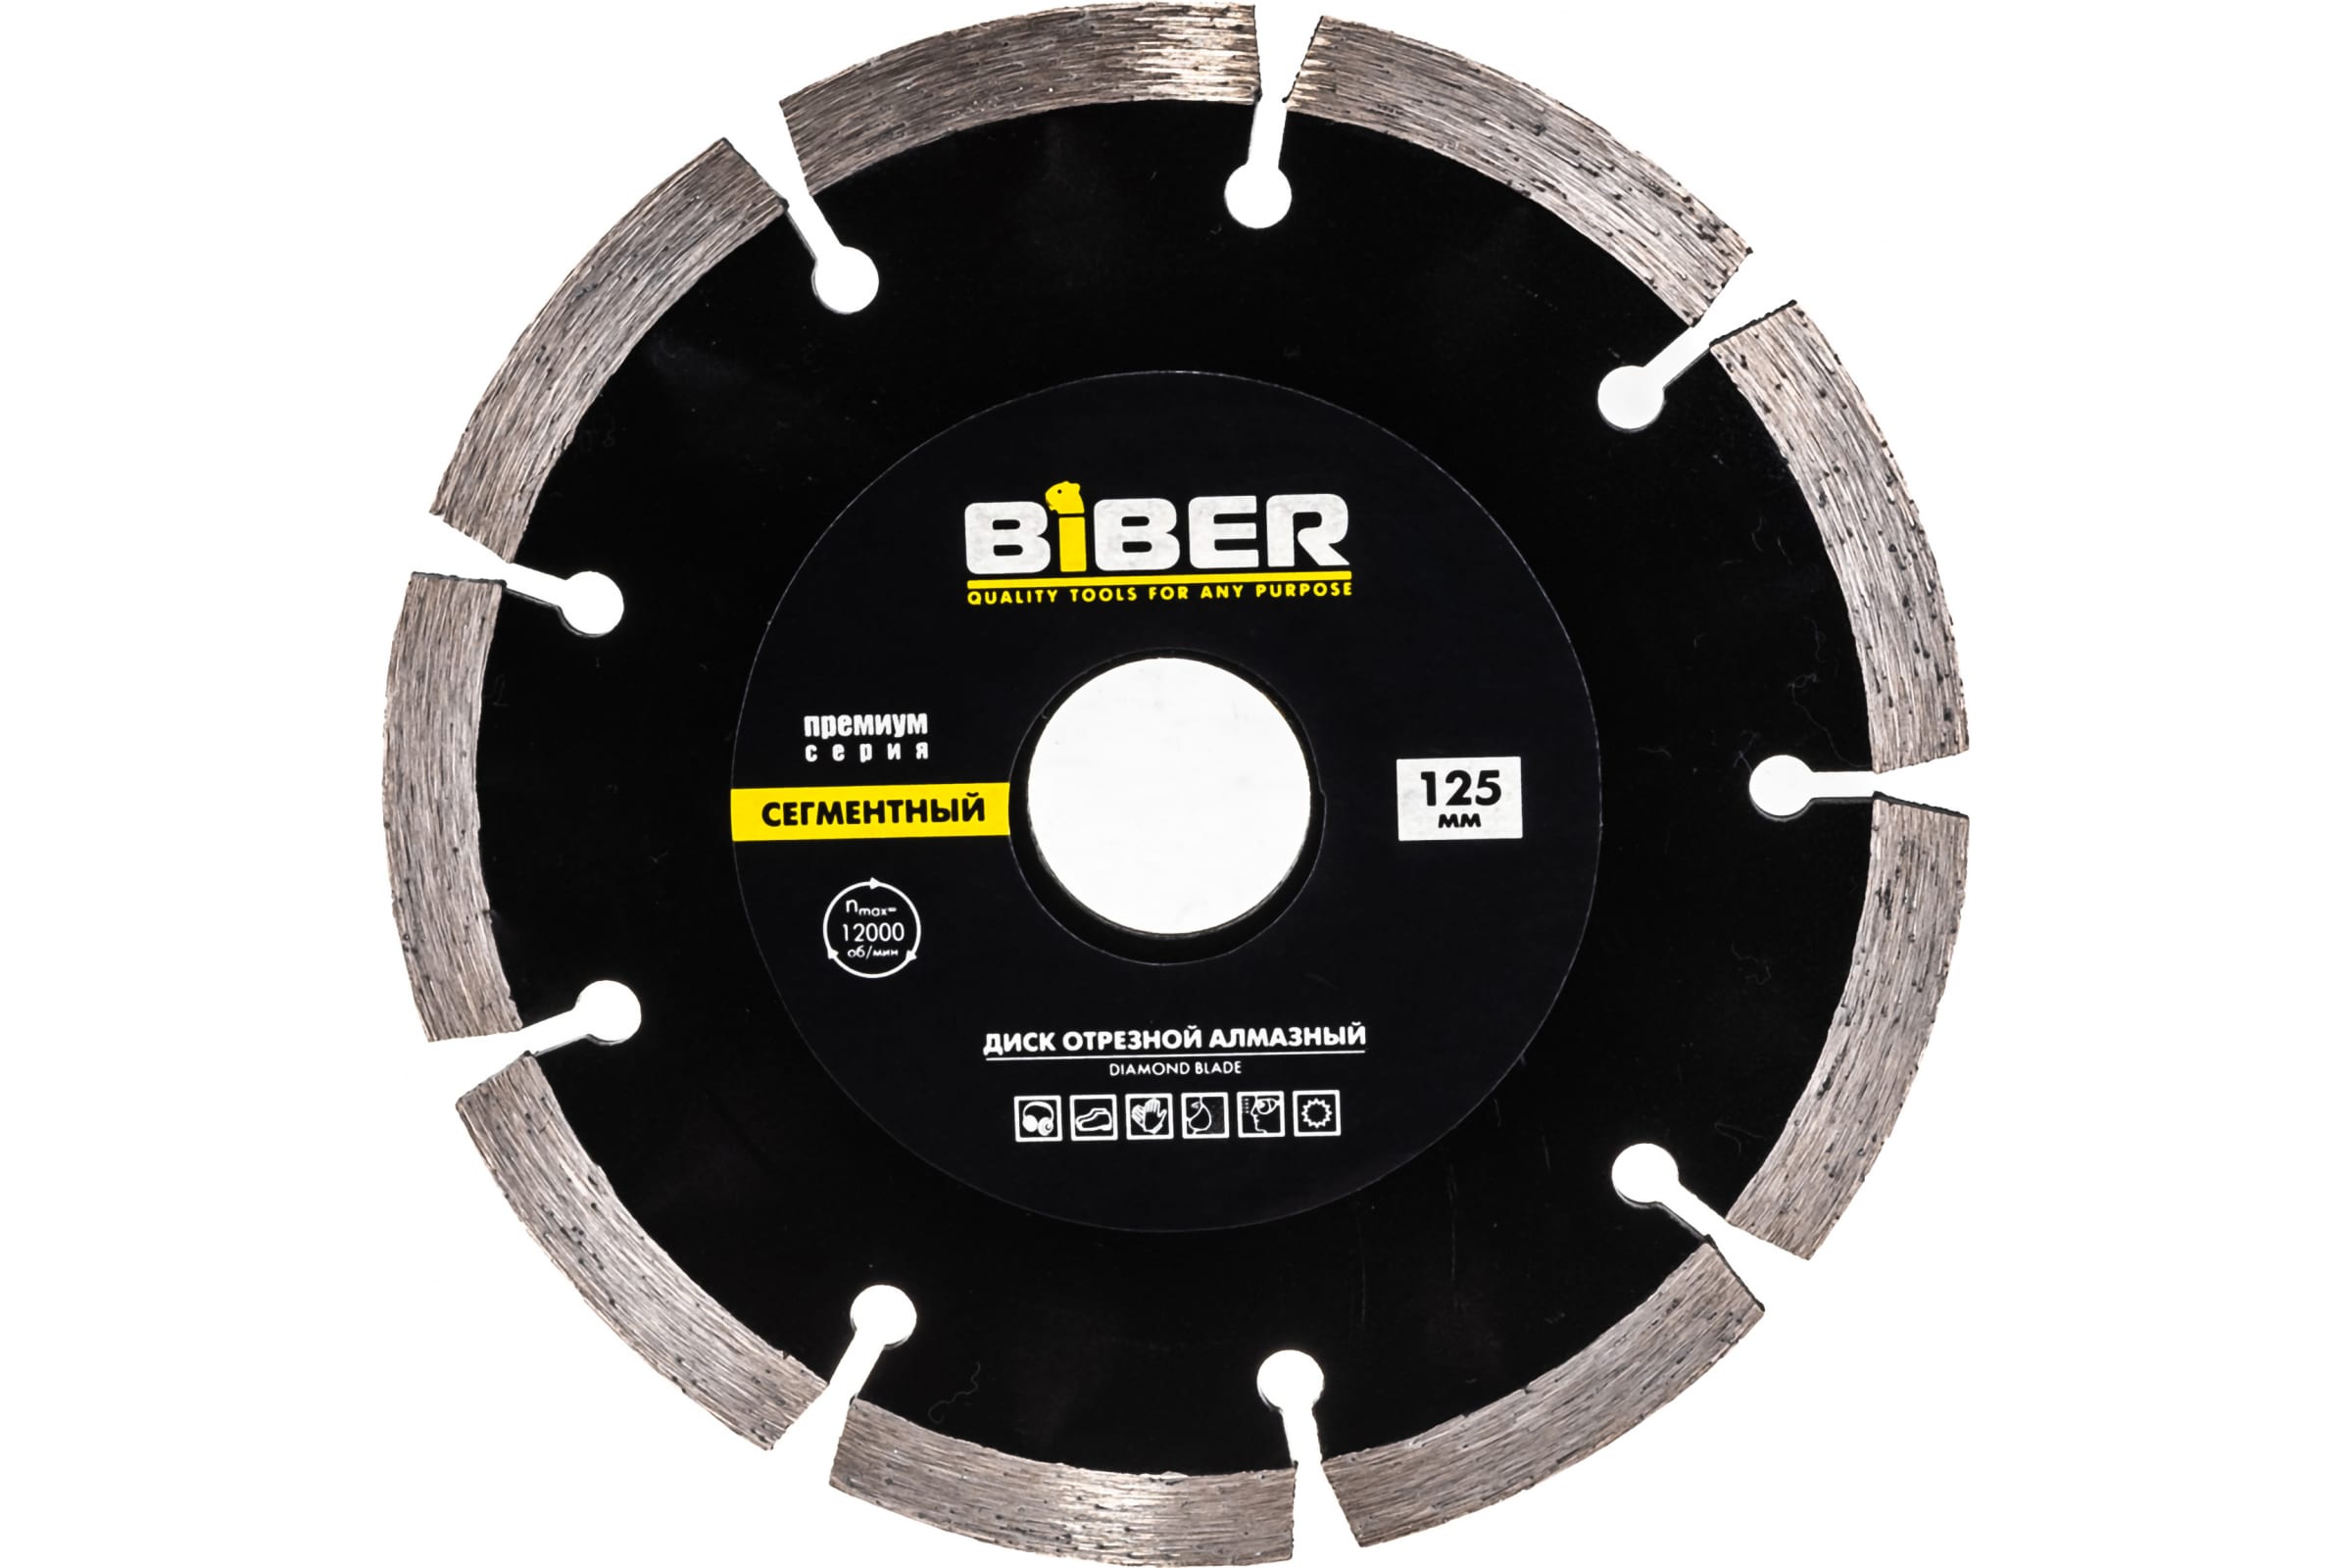 Biber Диск алмазный сегментный Премиум 125мм 70263 тов-039552 диск пильный biber